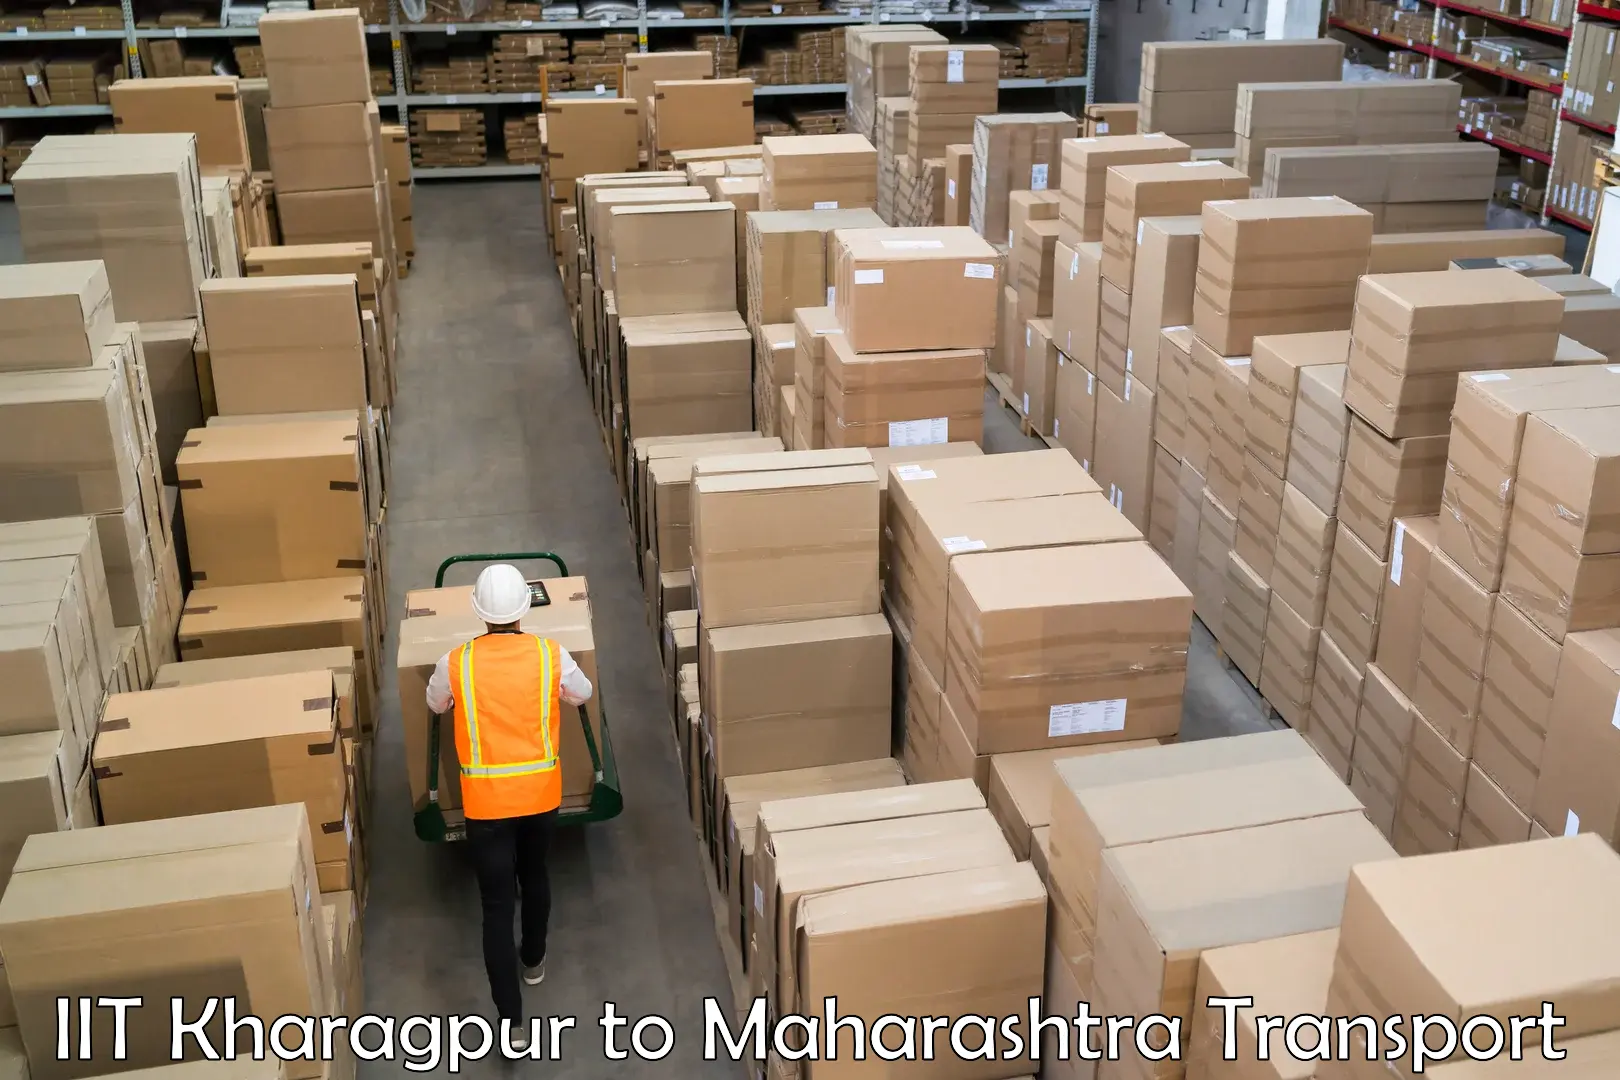 Shipping partner IIT Kharagpur to Mumbai University